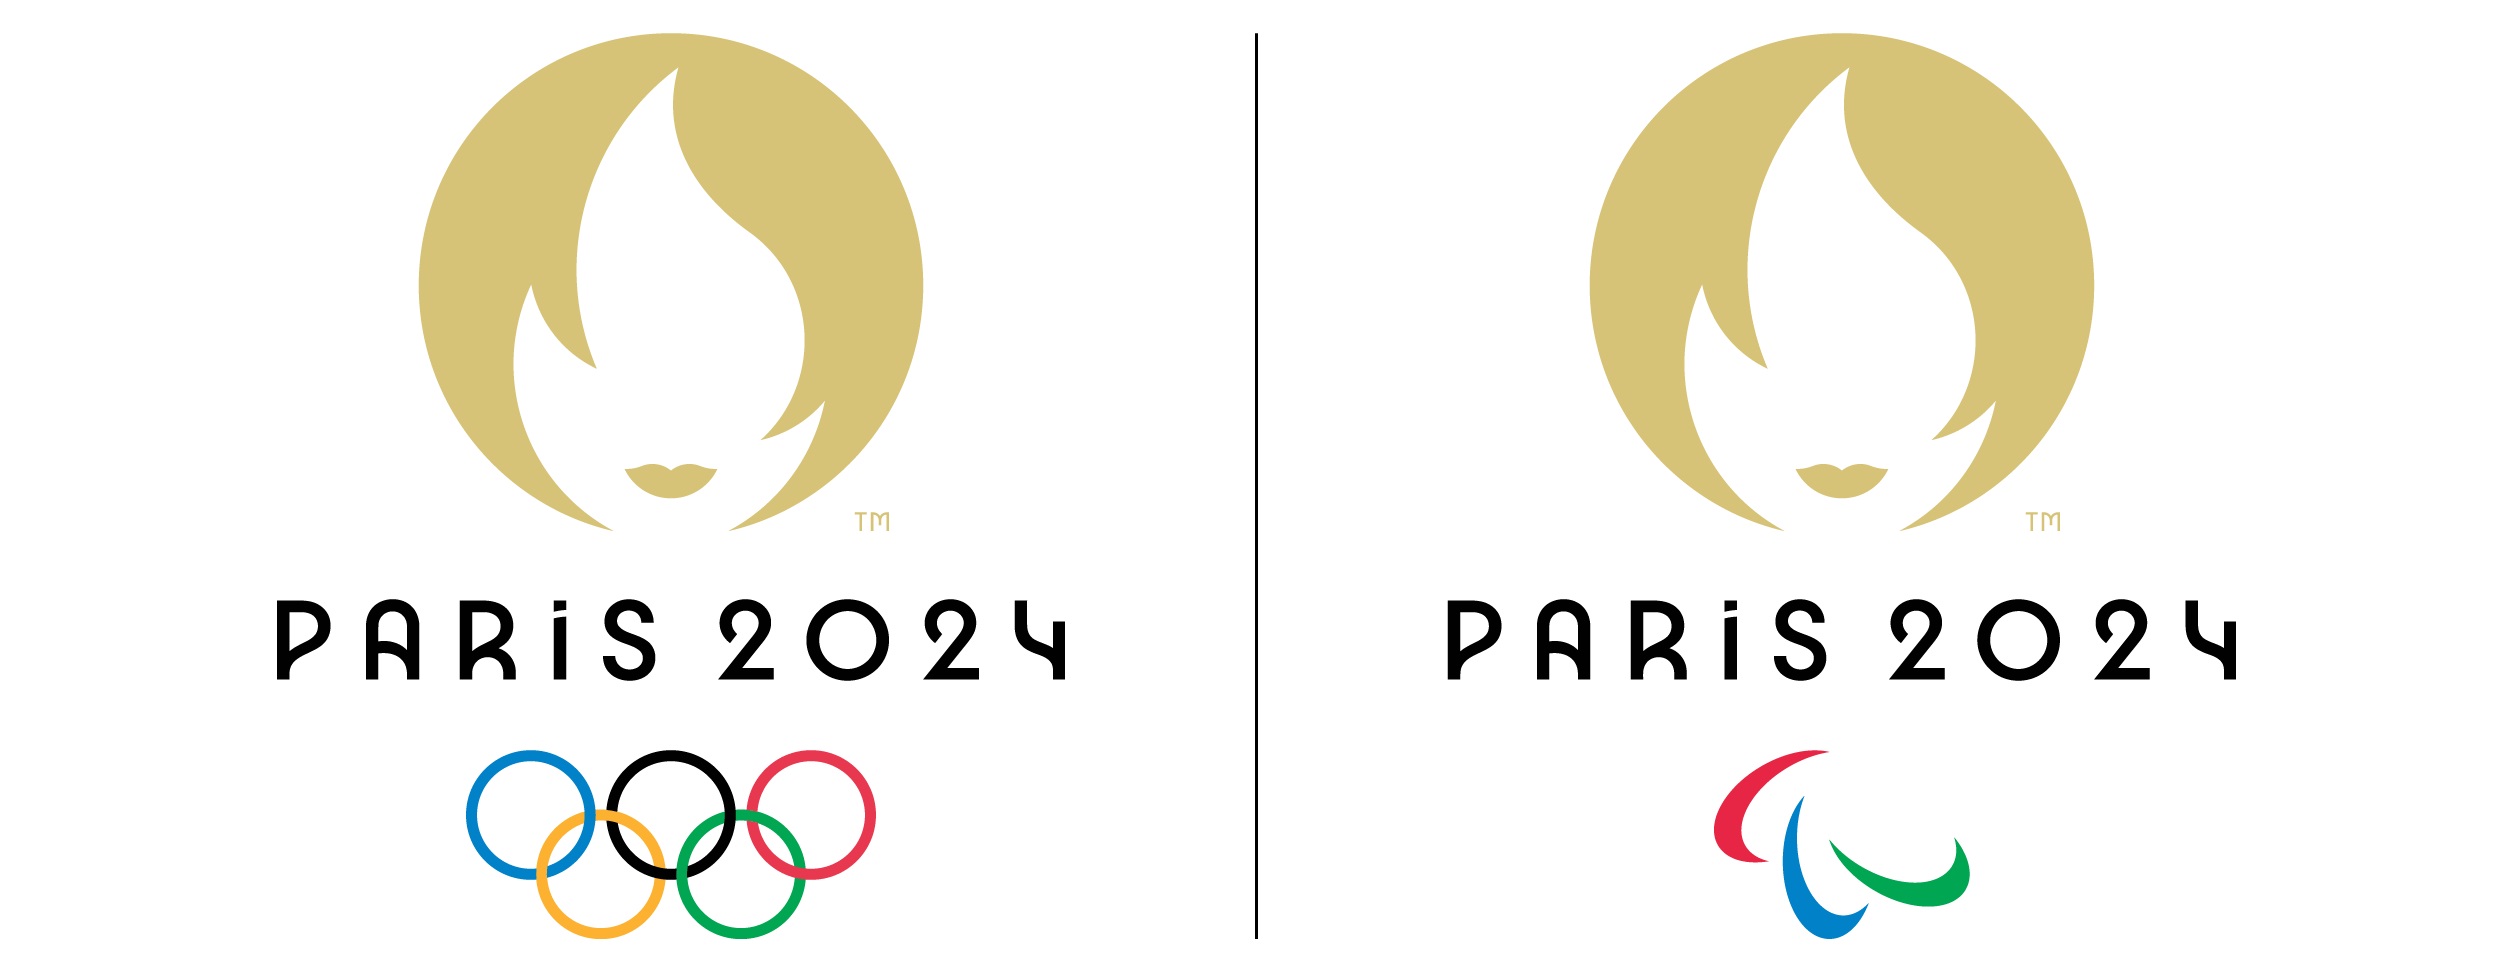 Pertama Dalam Sejarah, Olimpiade Paris 2024 Akan Gelar Upacara Pembukaan di Luar Stadion